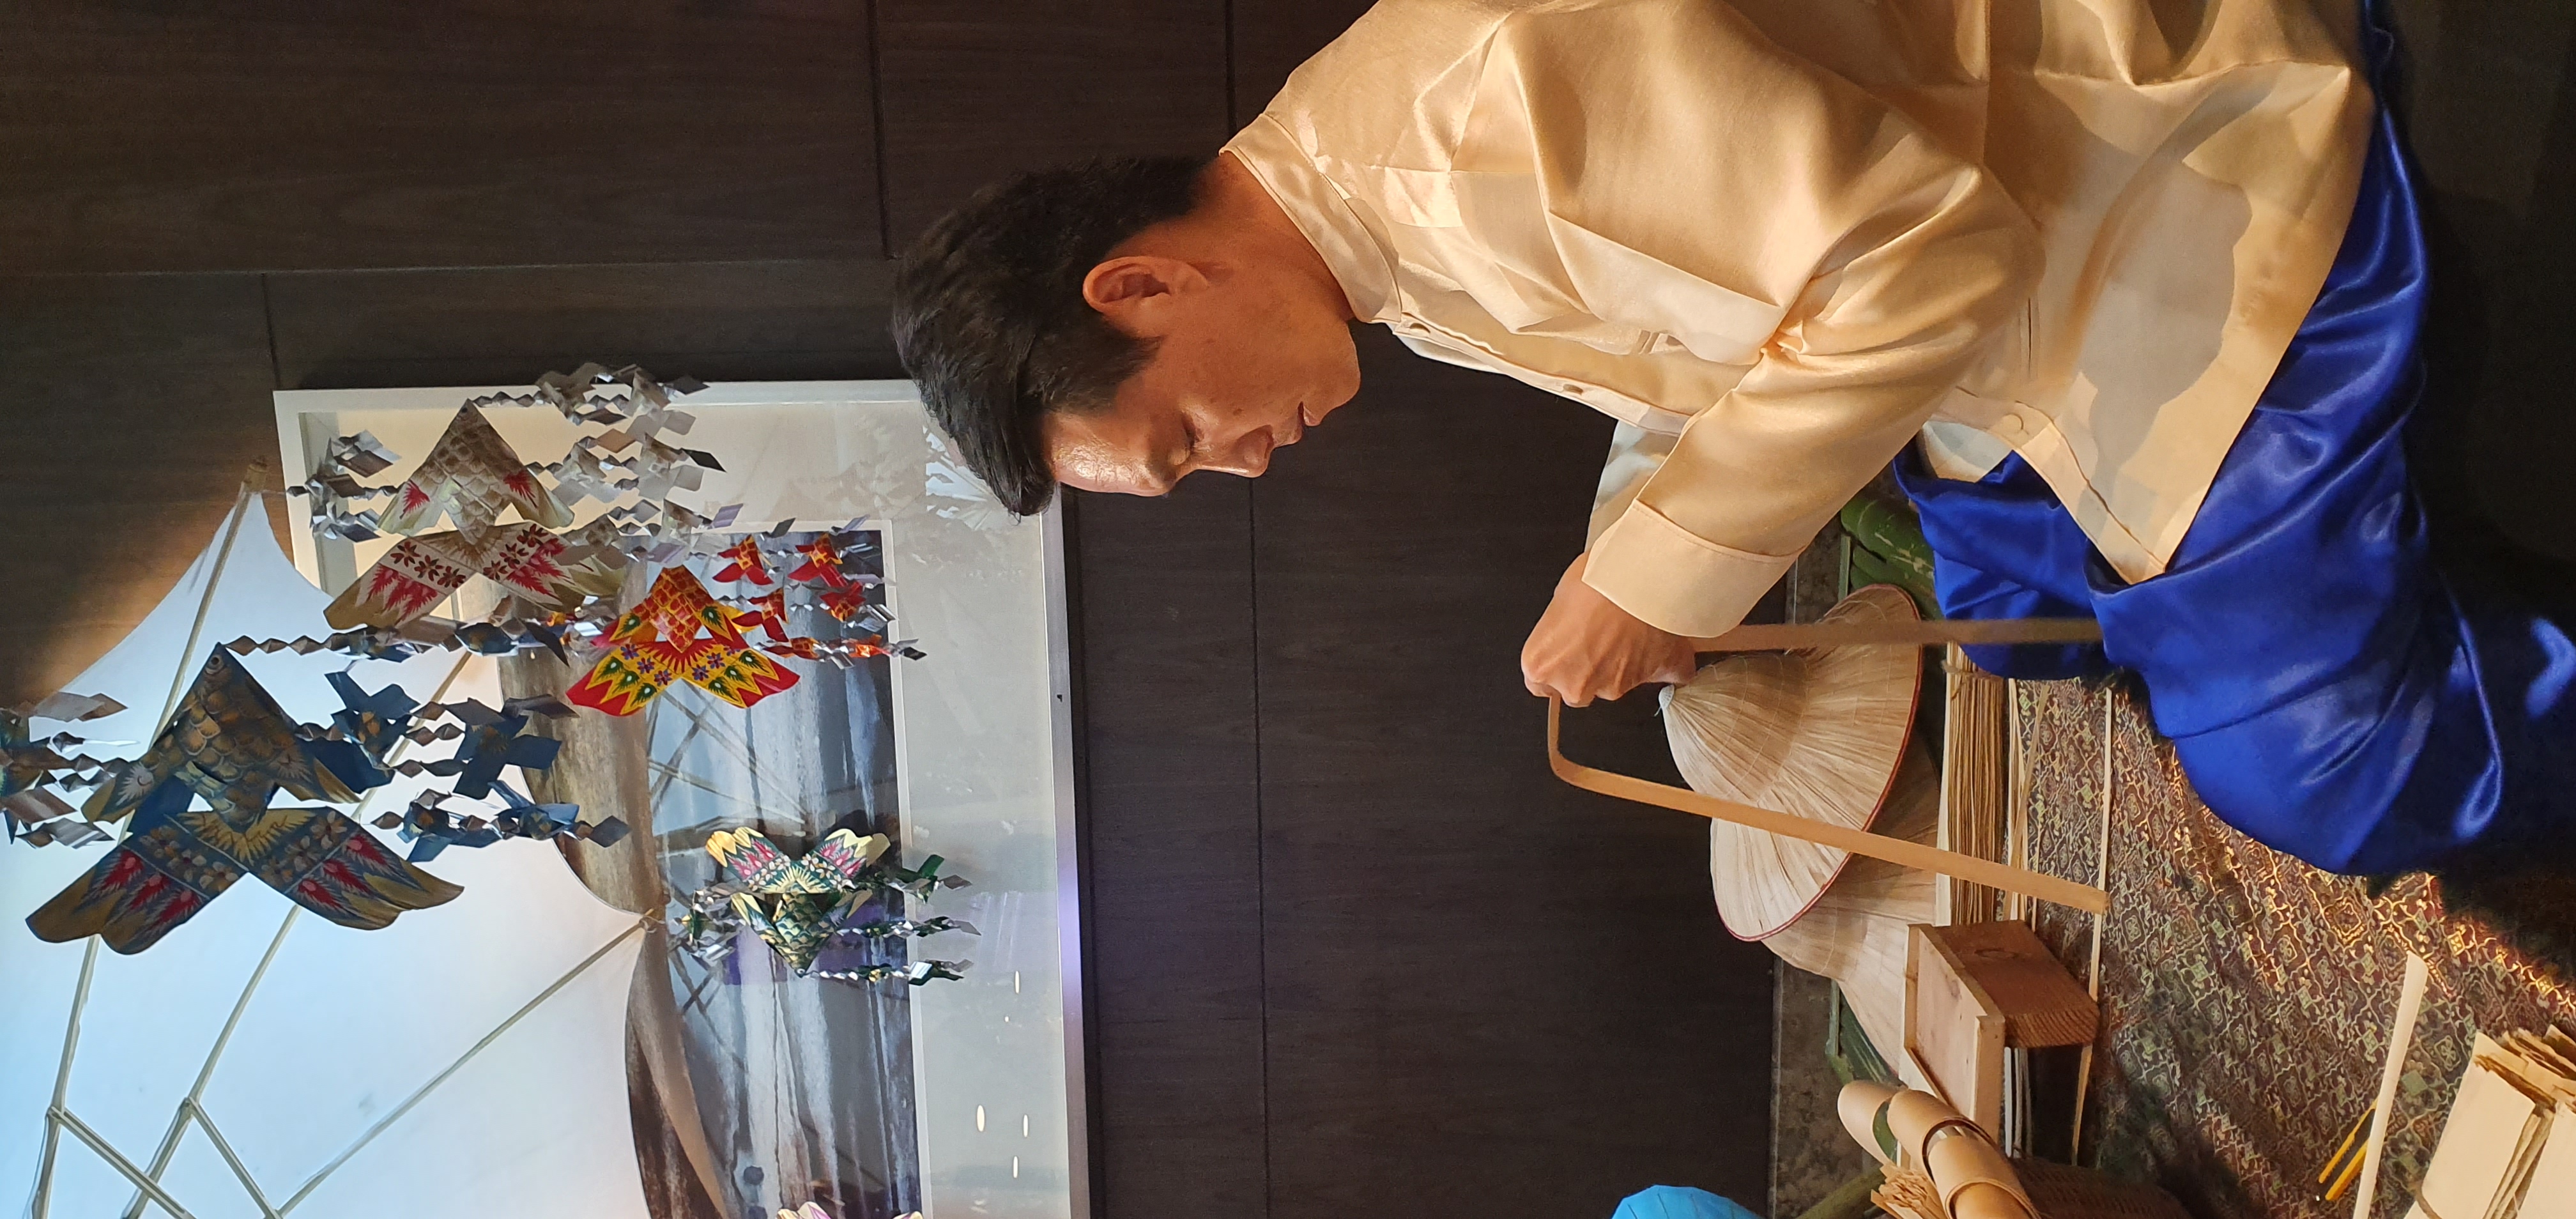 สอนสานปลาตะเพียนไทย เพ้น์ร่ม แกะสลักสบู่ แกะสลักผลไม้ และ ร้อยมาลัย ณ Foyer ชั้น 7 โรงแรม Sofitel Bangkok Sukhumvit